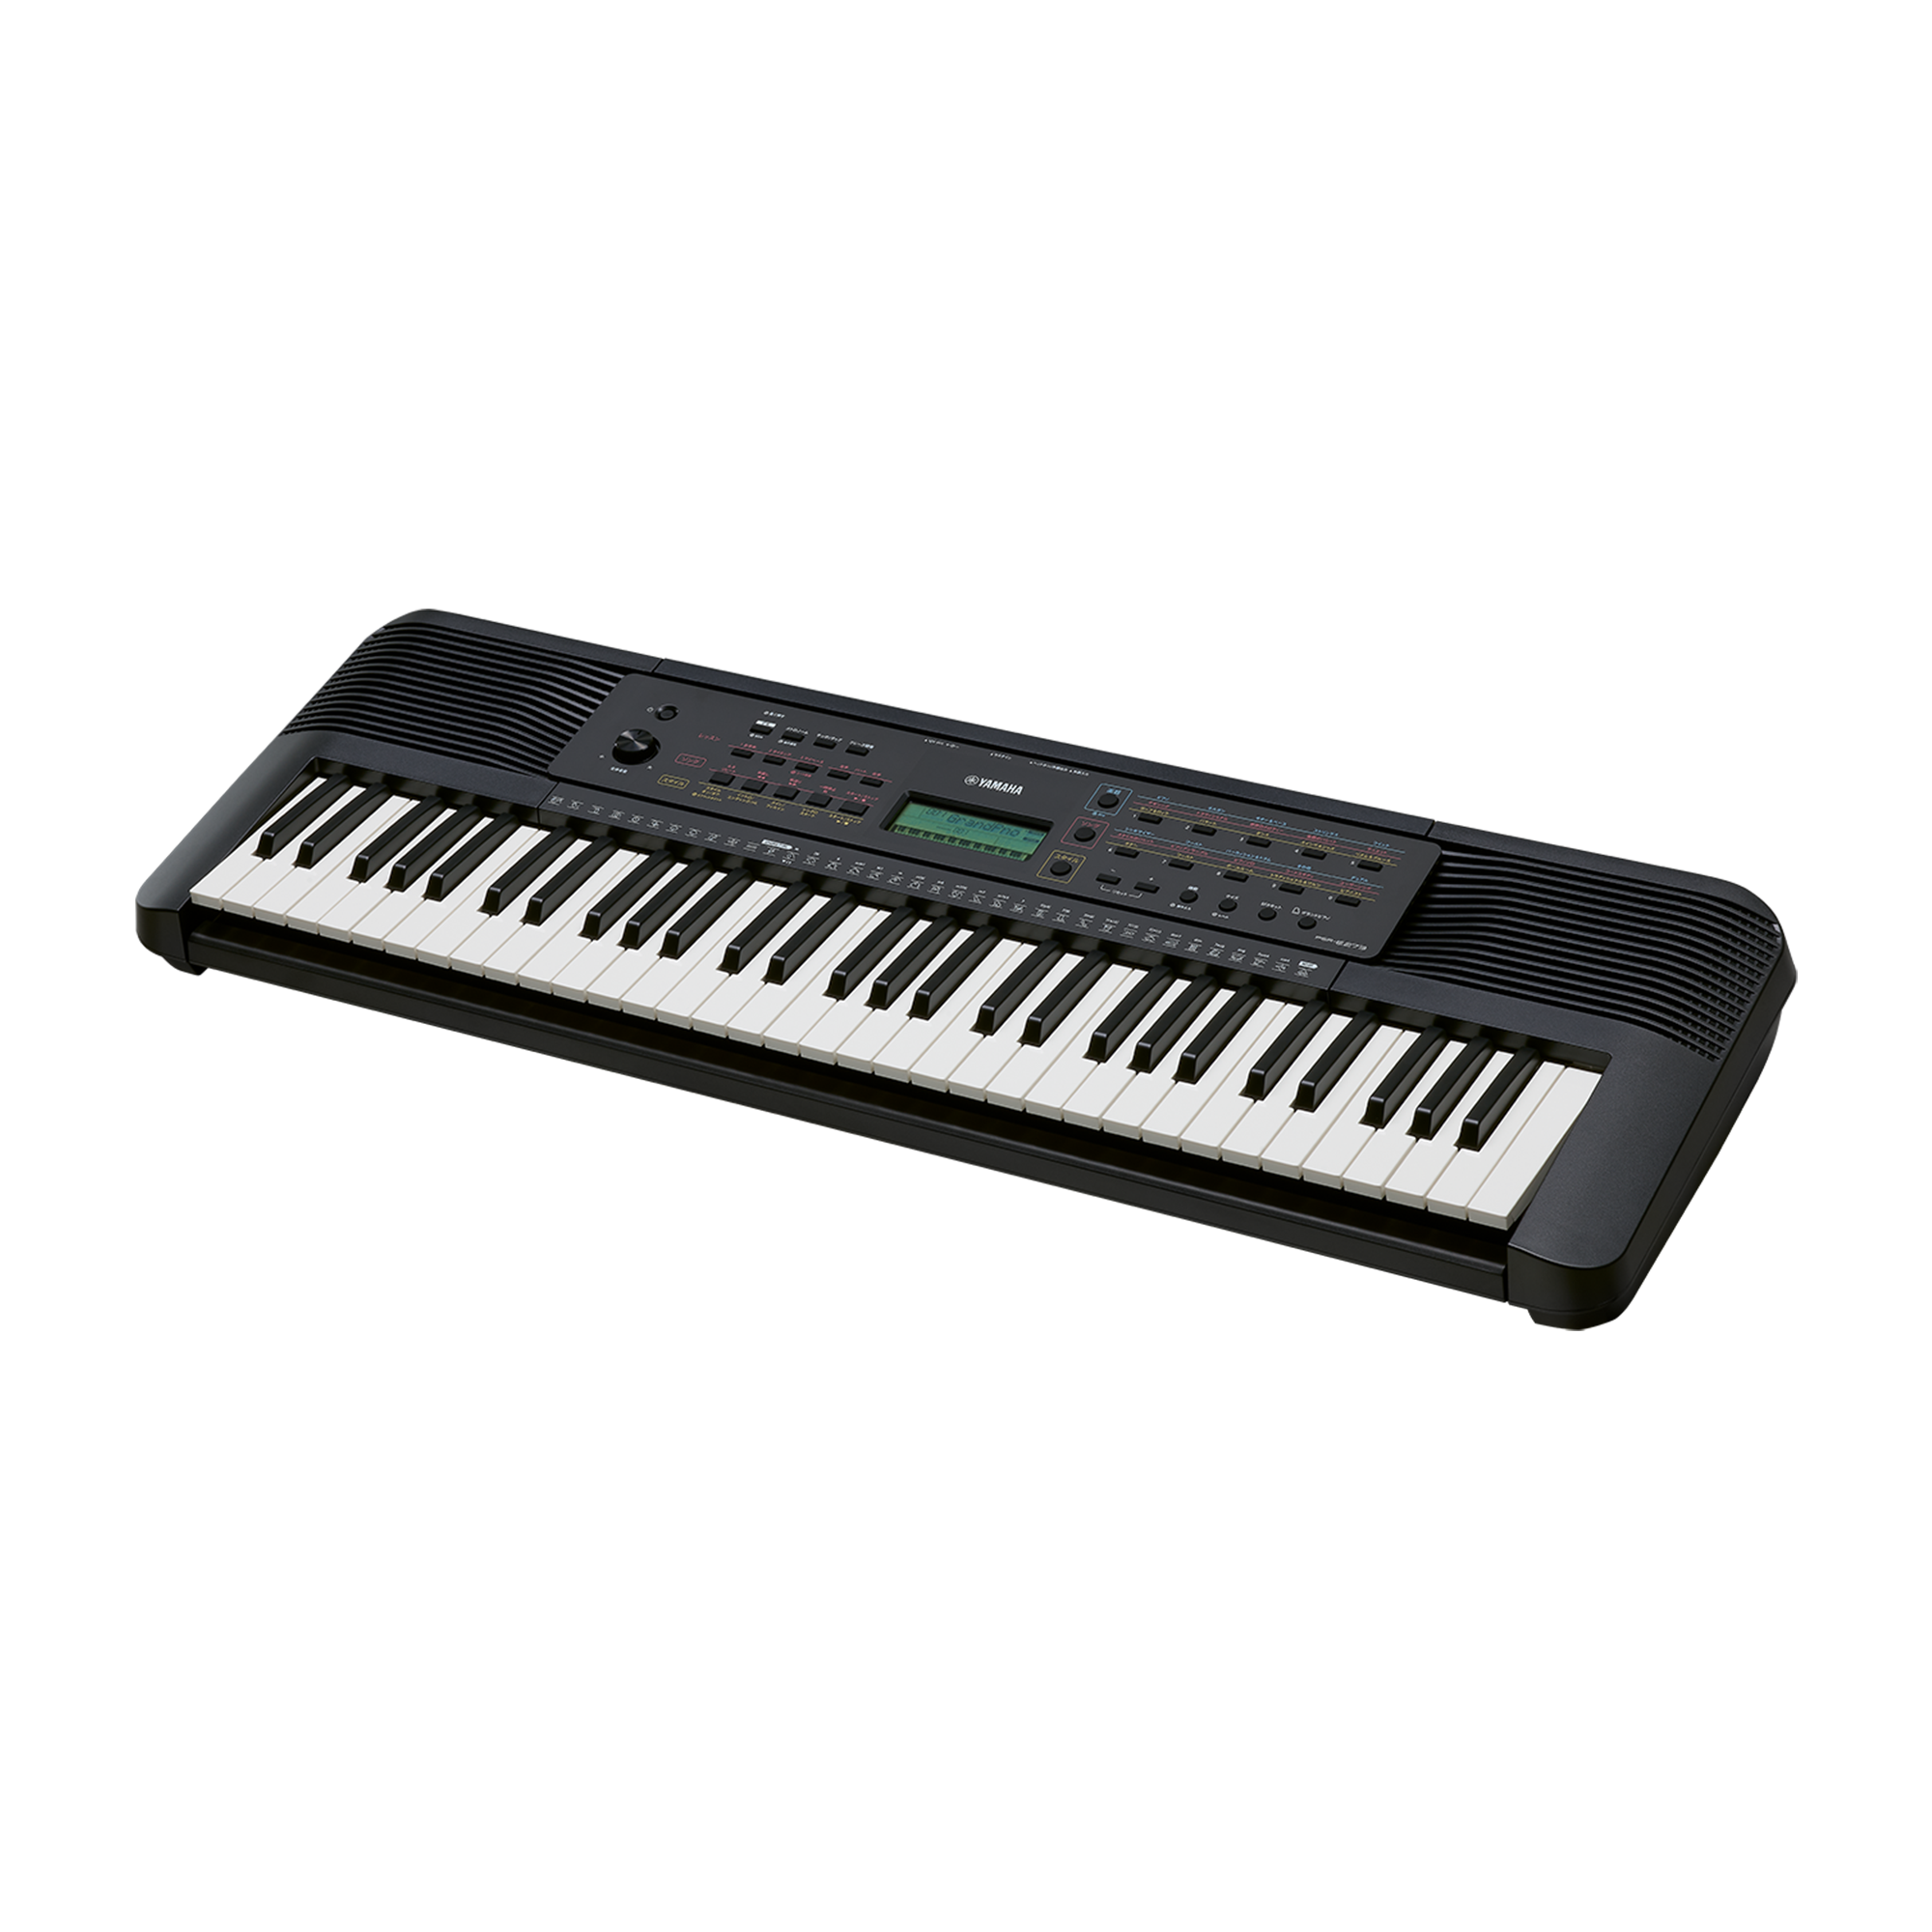 ヤマハ PORTATONE PSR-110 電子キーボード - 鍵盤楽器